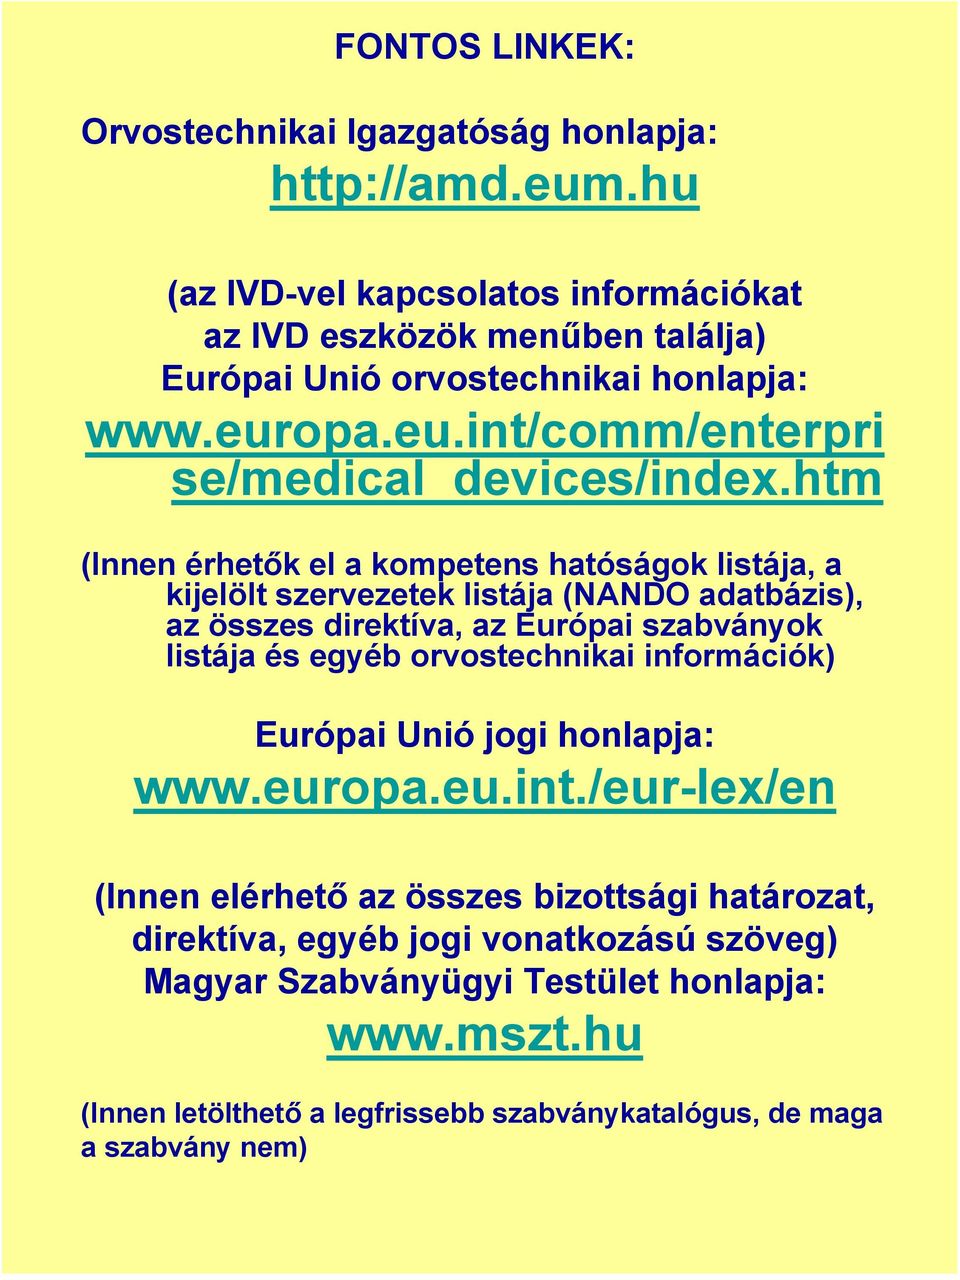 htm (Innen érhetők el a kompetens hatóságok listája, a kijelölt szervezetek listája (NANDO adatbázis), az összes direktíva, az Európai szabványok listája és egyéb